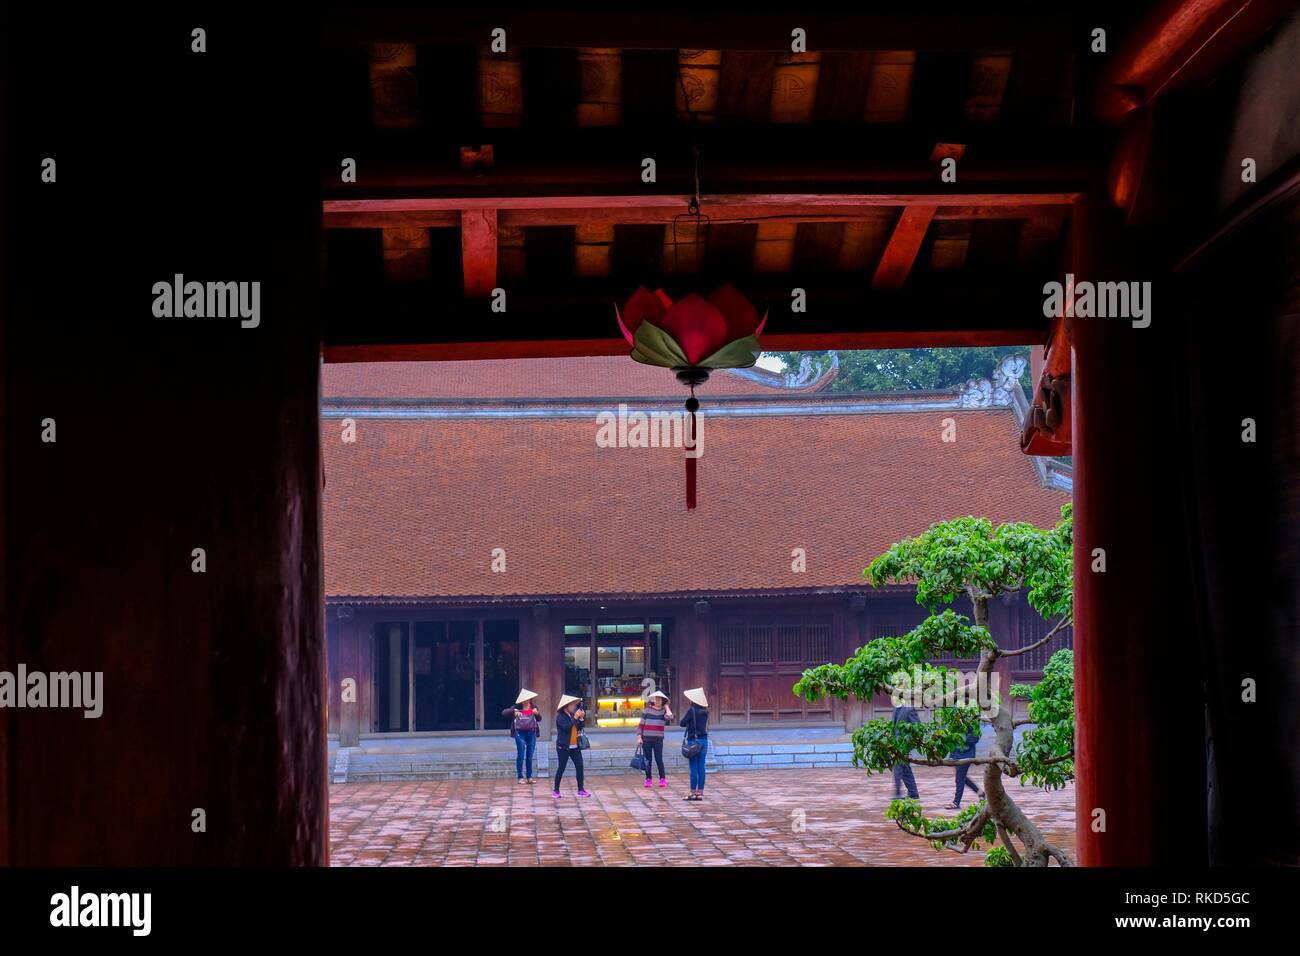 Vietnam, el templo de la literatura, Hanoi. El Templo de la literatura es un templo de Confucio en Hanoi, Vietnam del Norte. El templo alberga el Imperial Foto de stock